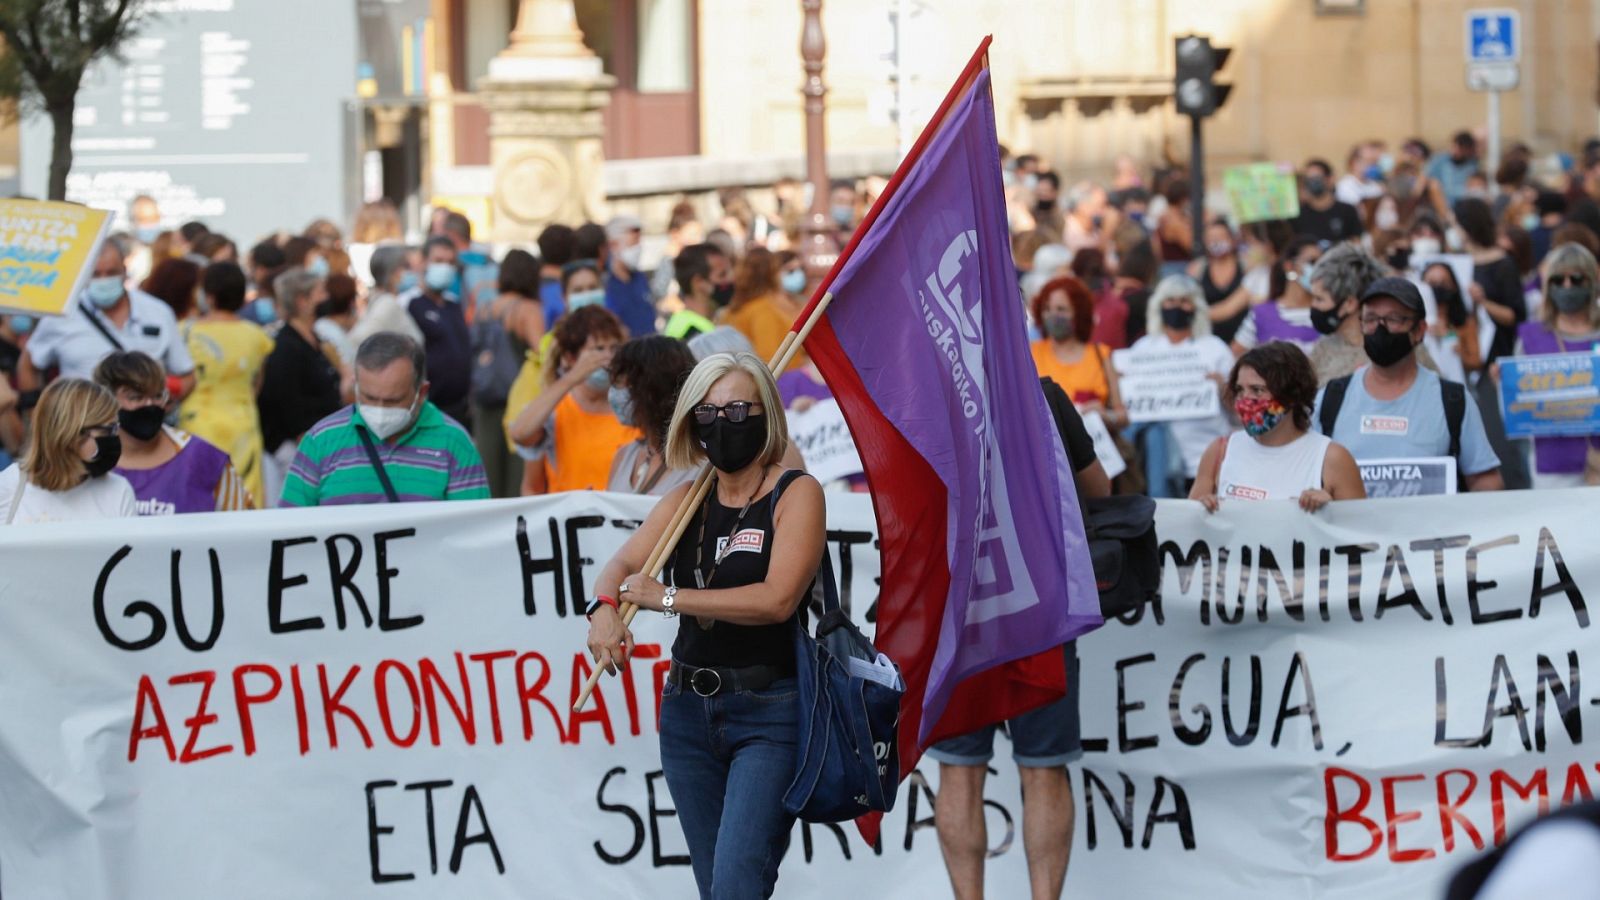 Miles de personas piden medidas para un retorno seguro a las clases, en la huelga de la enseñanza en Euskadi